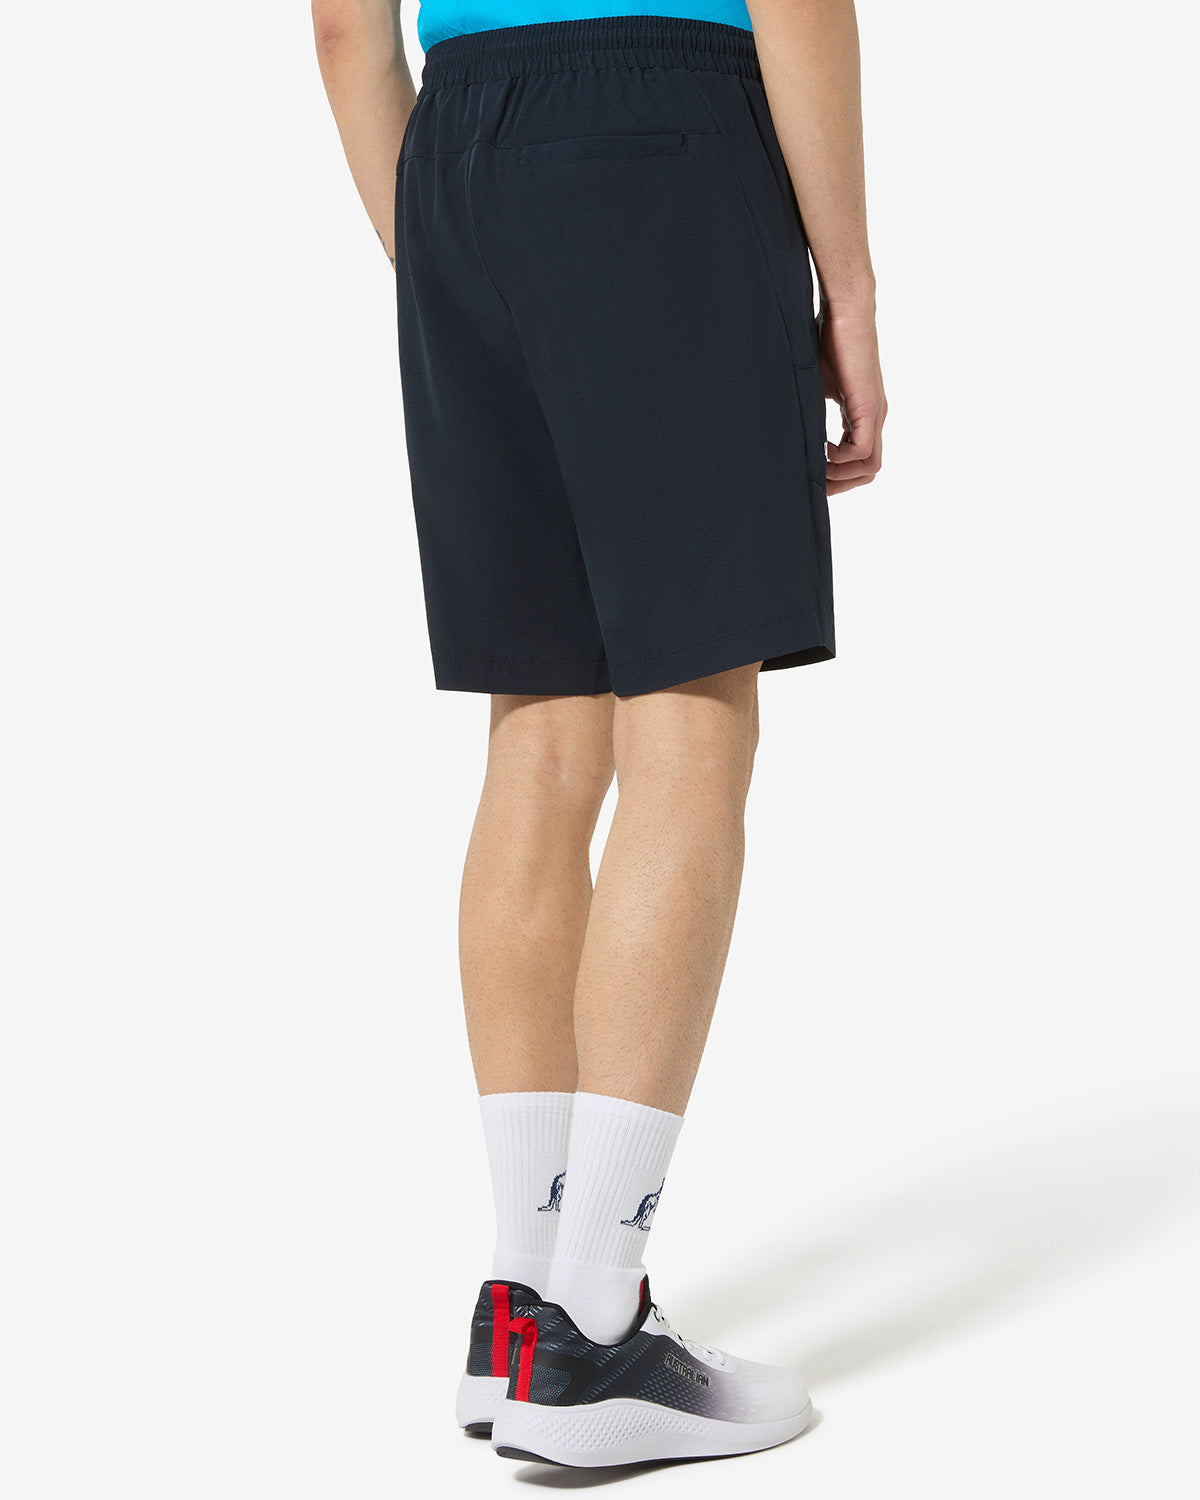 City Shorts: Australian Sportswear